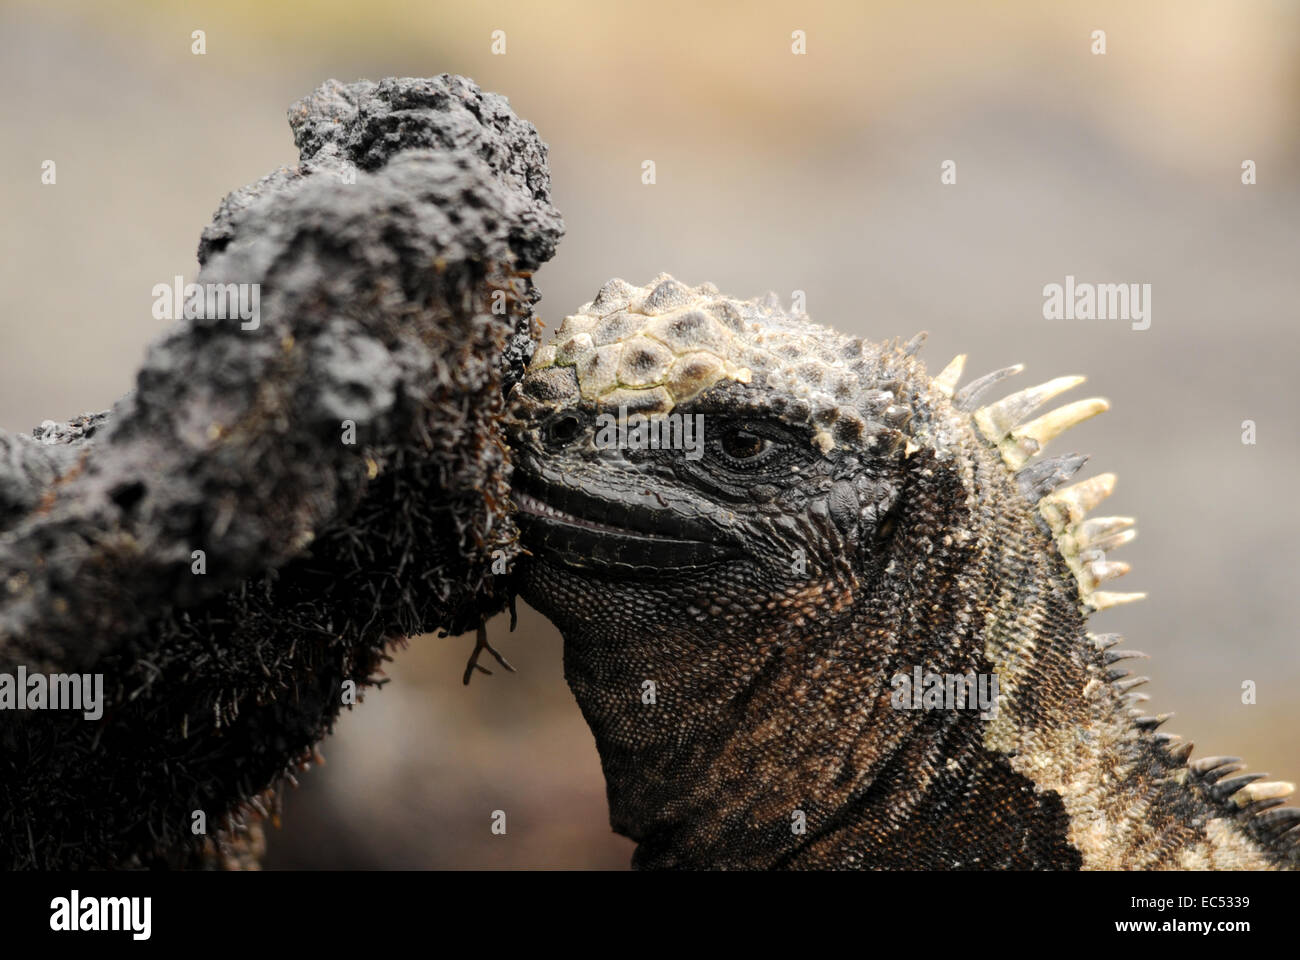 Marine iguana eats algae Stock Photo